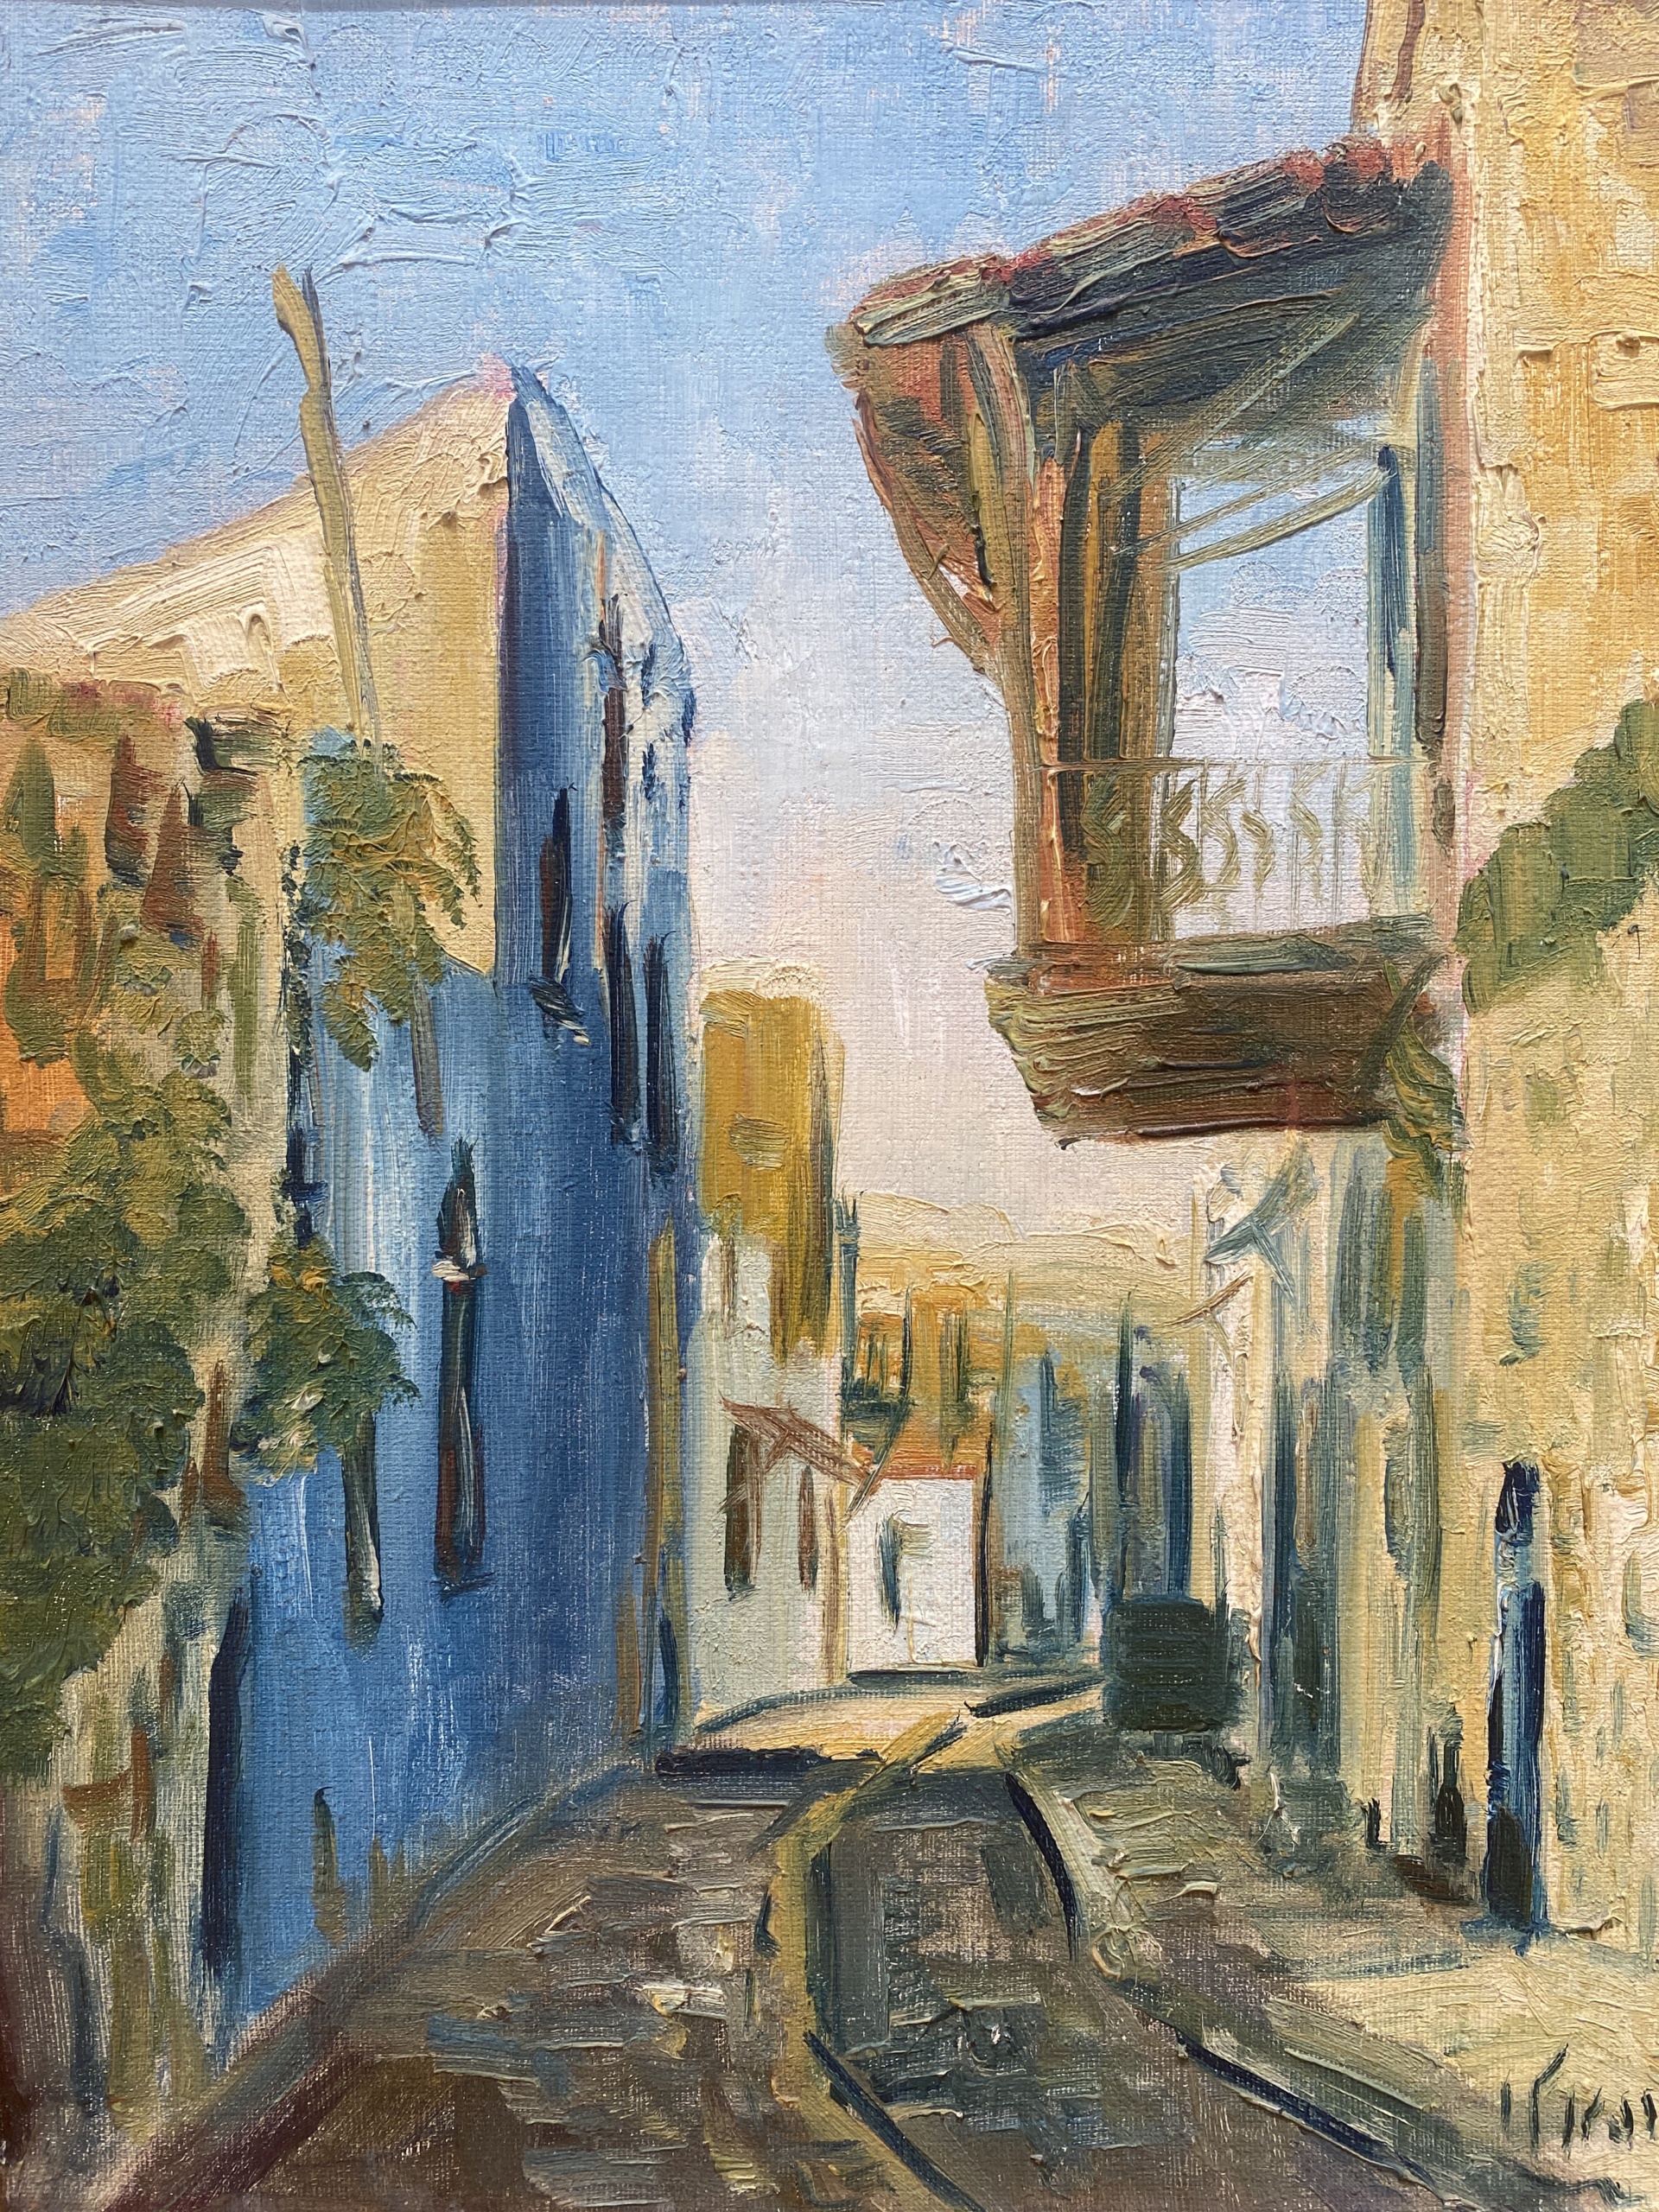 Zvi Raphaeli - Street view - Oil on canvas - 46 x 37 cm